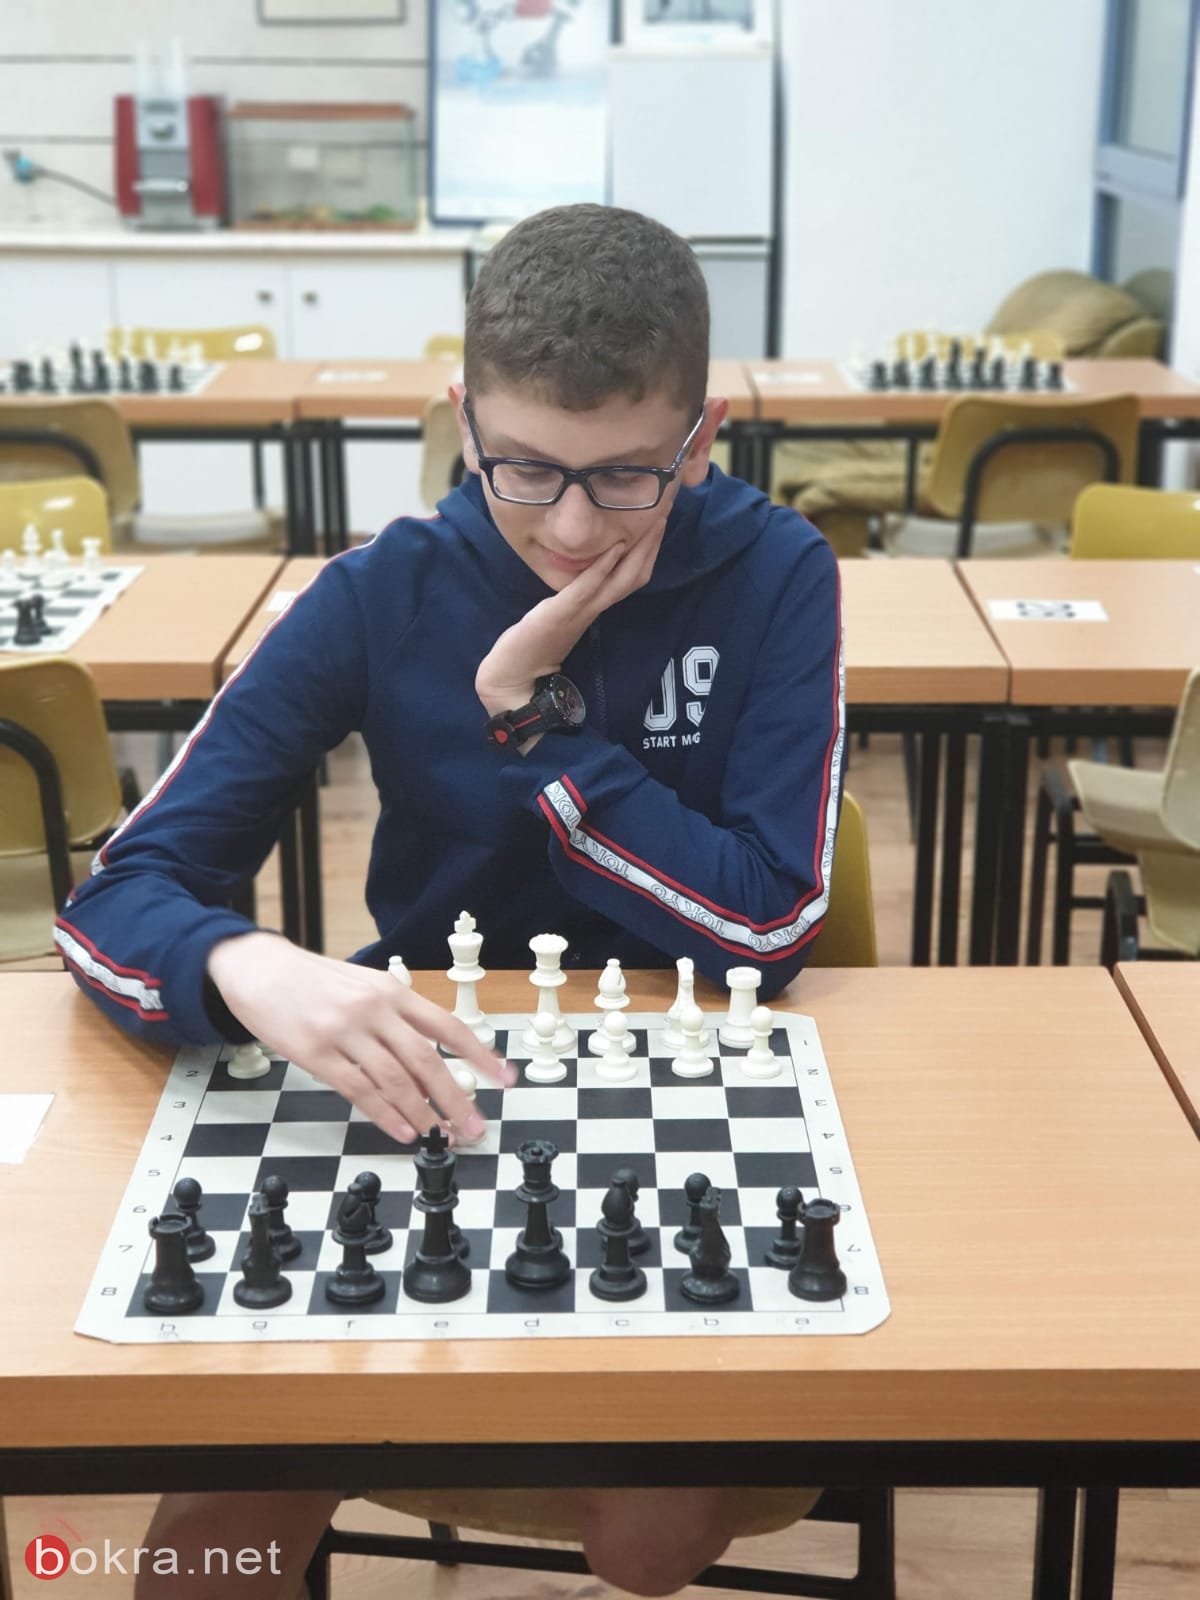 جهاد ربيع زعبي من الناصرة يحصد المرتبة الأولى في الشطرنج-5